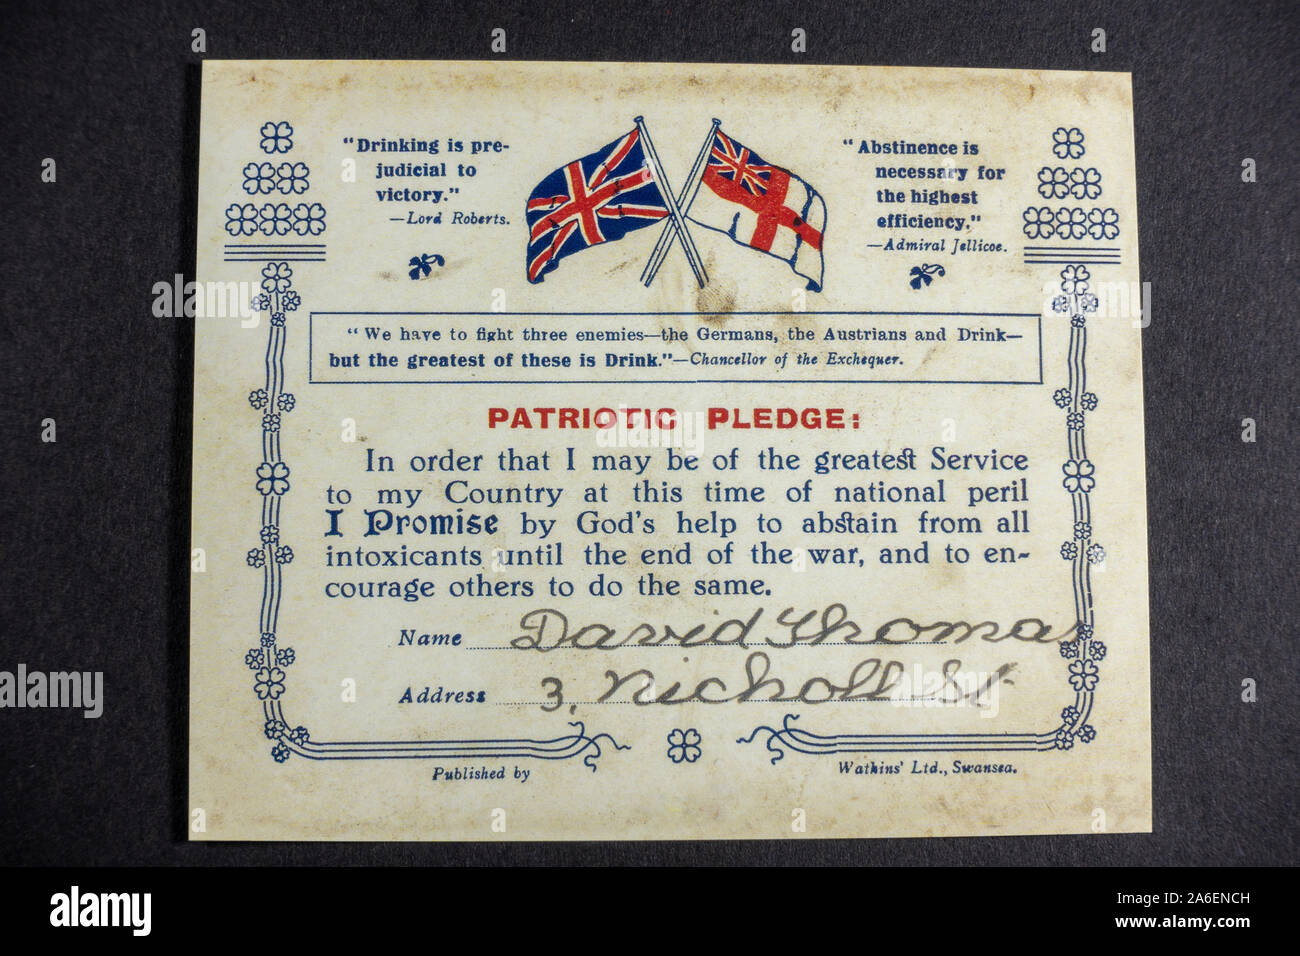 Eine Patriotische Pfandkarte (die sich verpflichtet, keinen Alkohol zu trinken), ein Stück Replikat-Erinnerungsstücke aus der ersten Zeit des ersten Weltkriegs. Stockfoto